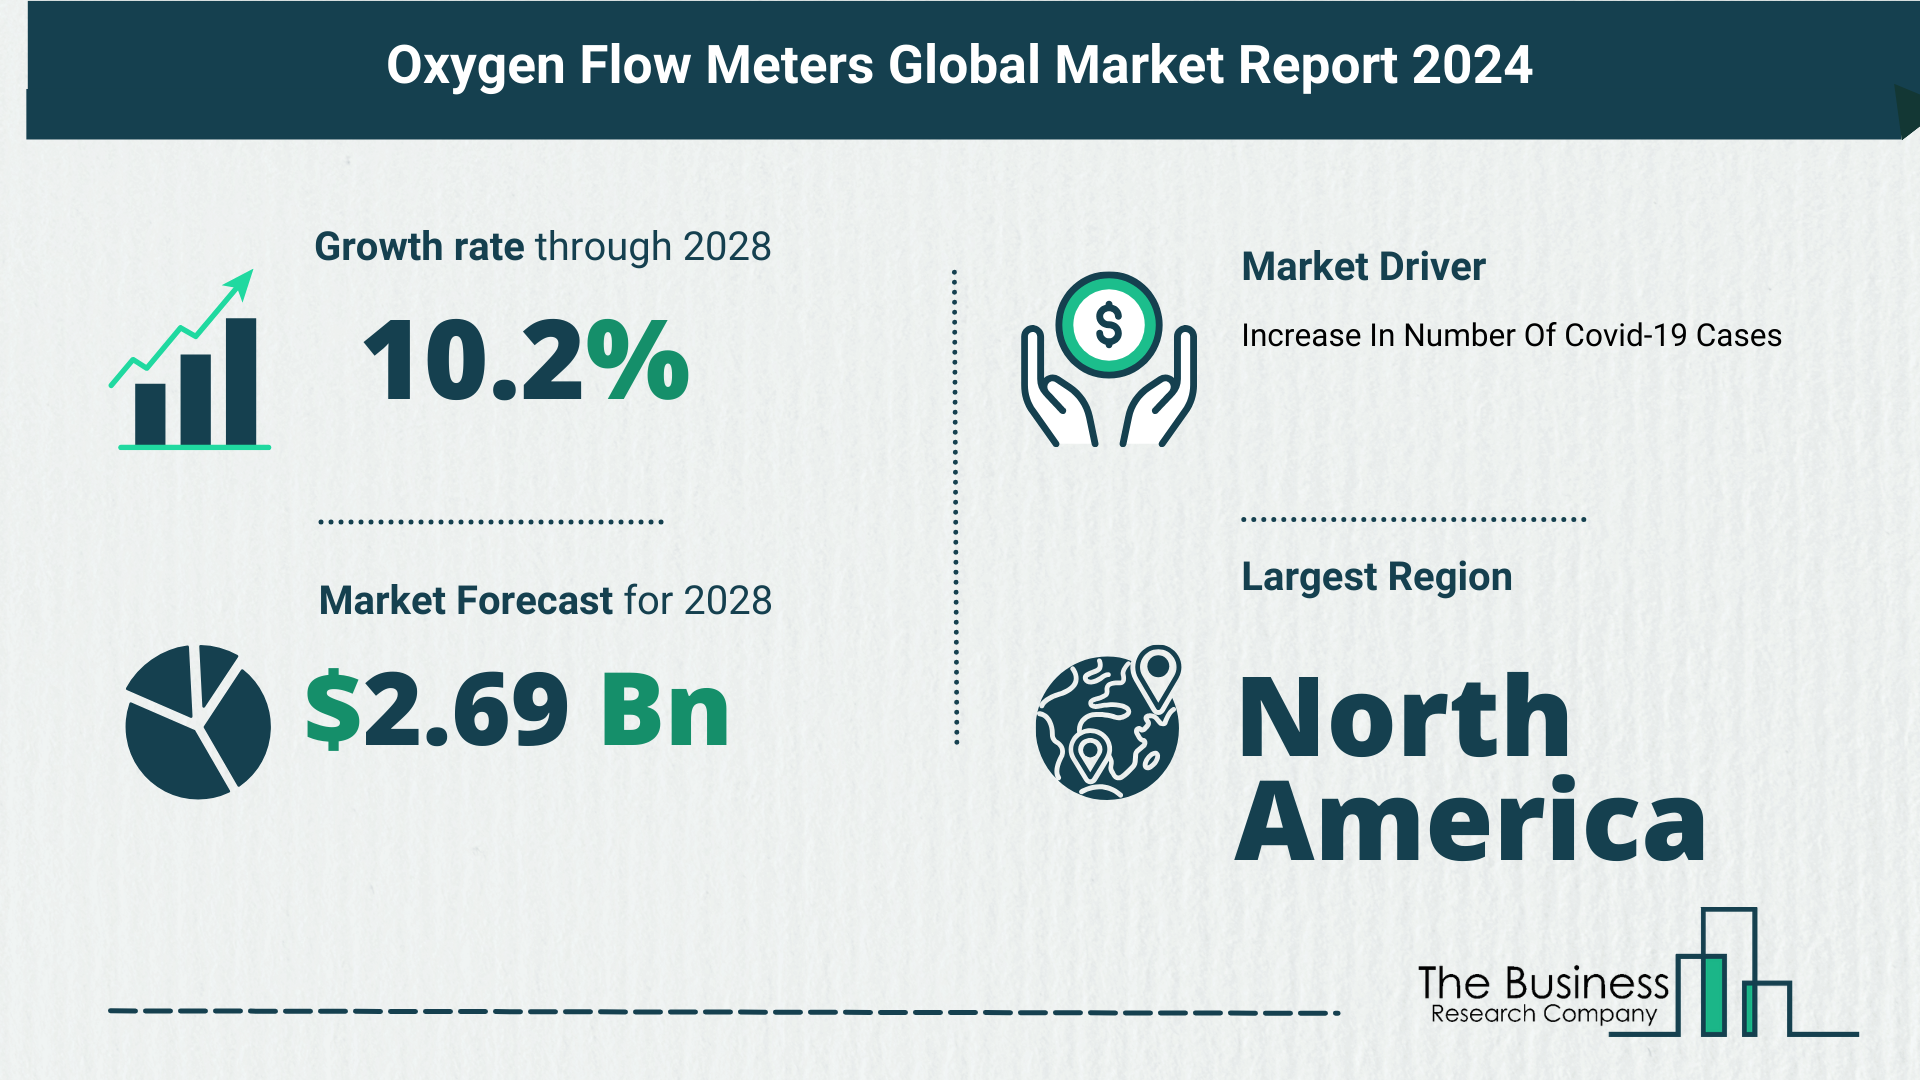 Global Oxygen Flow Meters Market